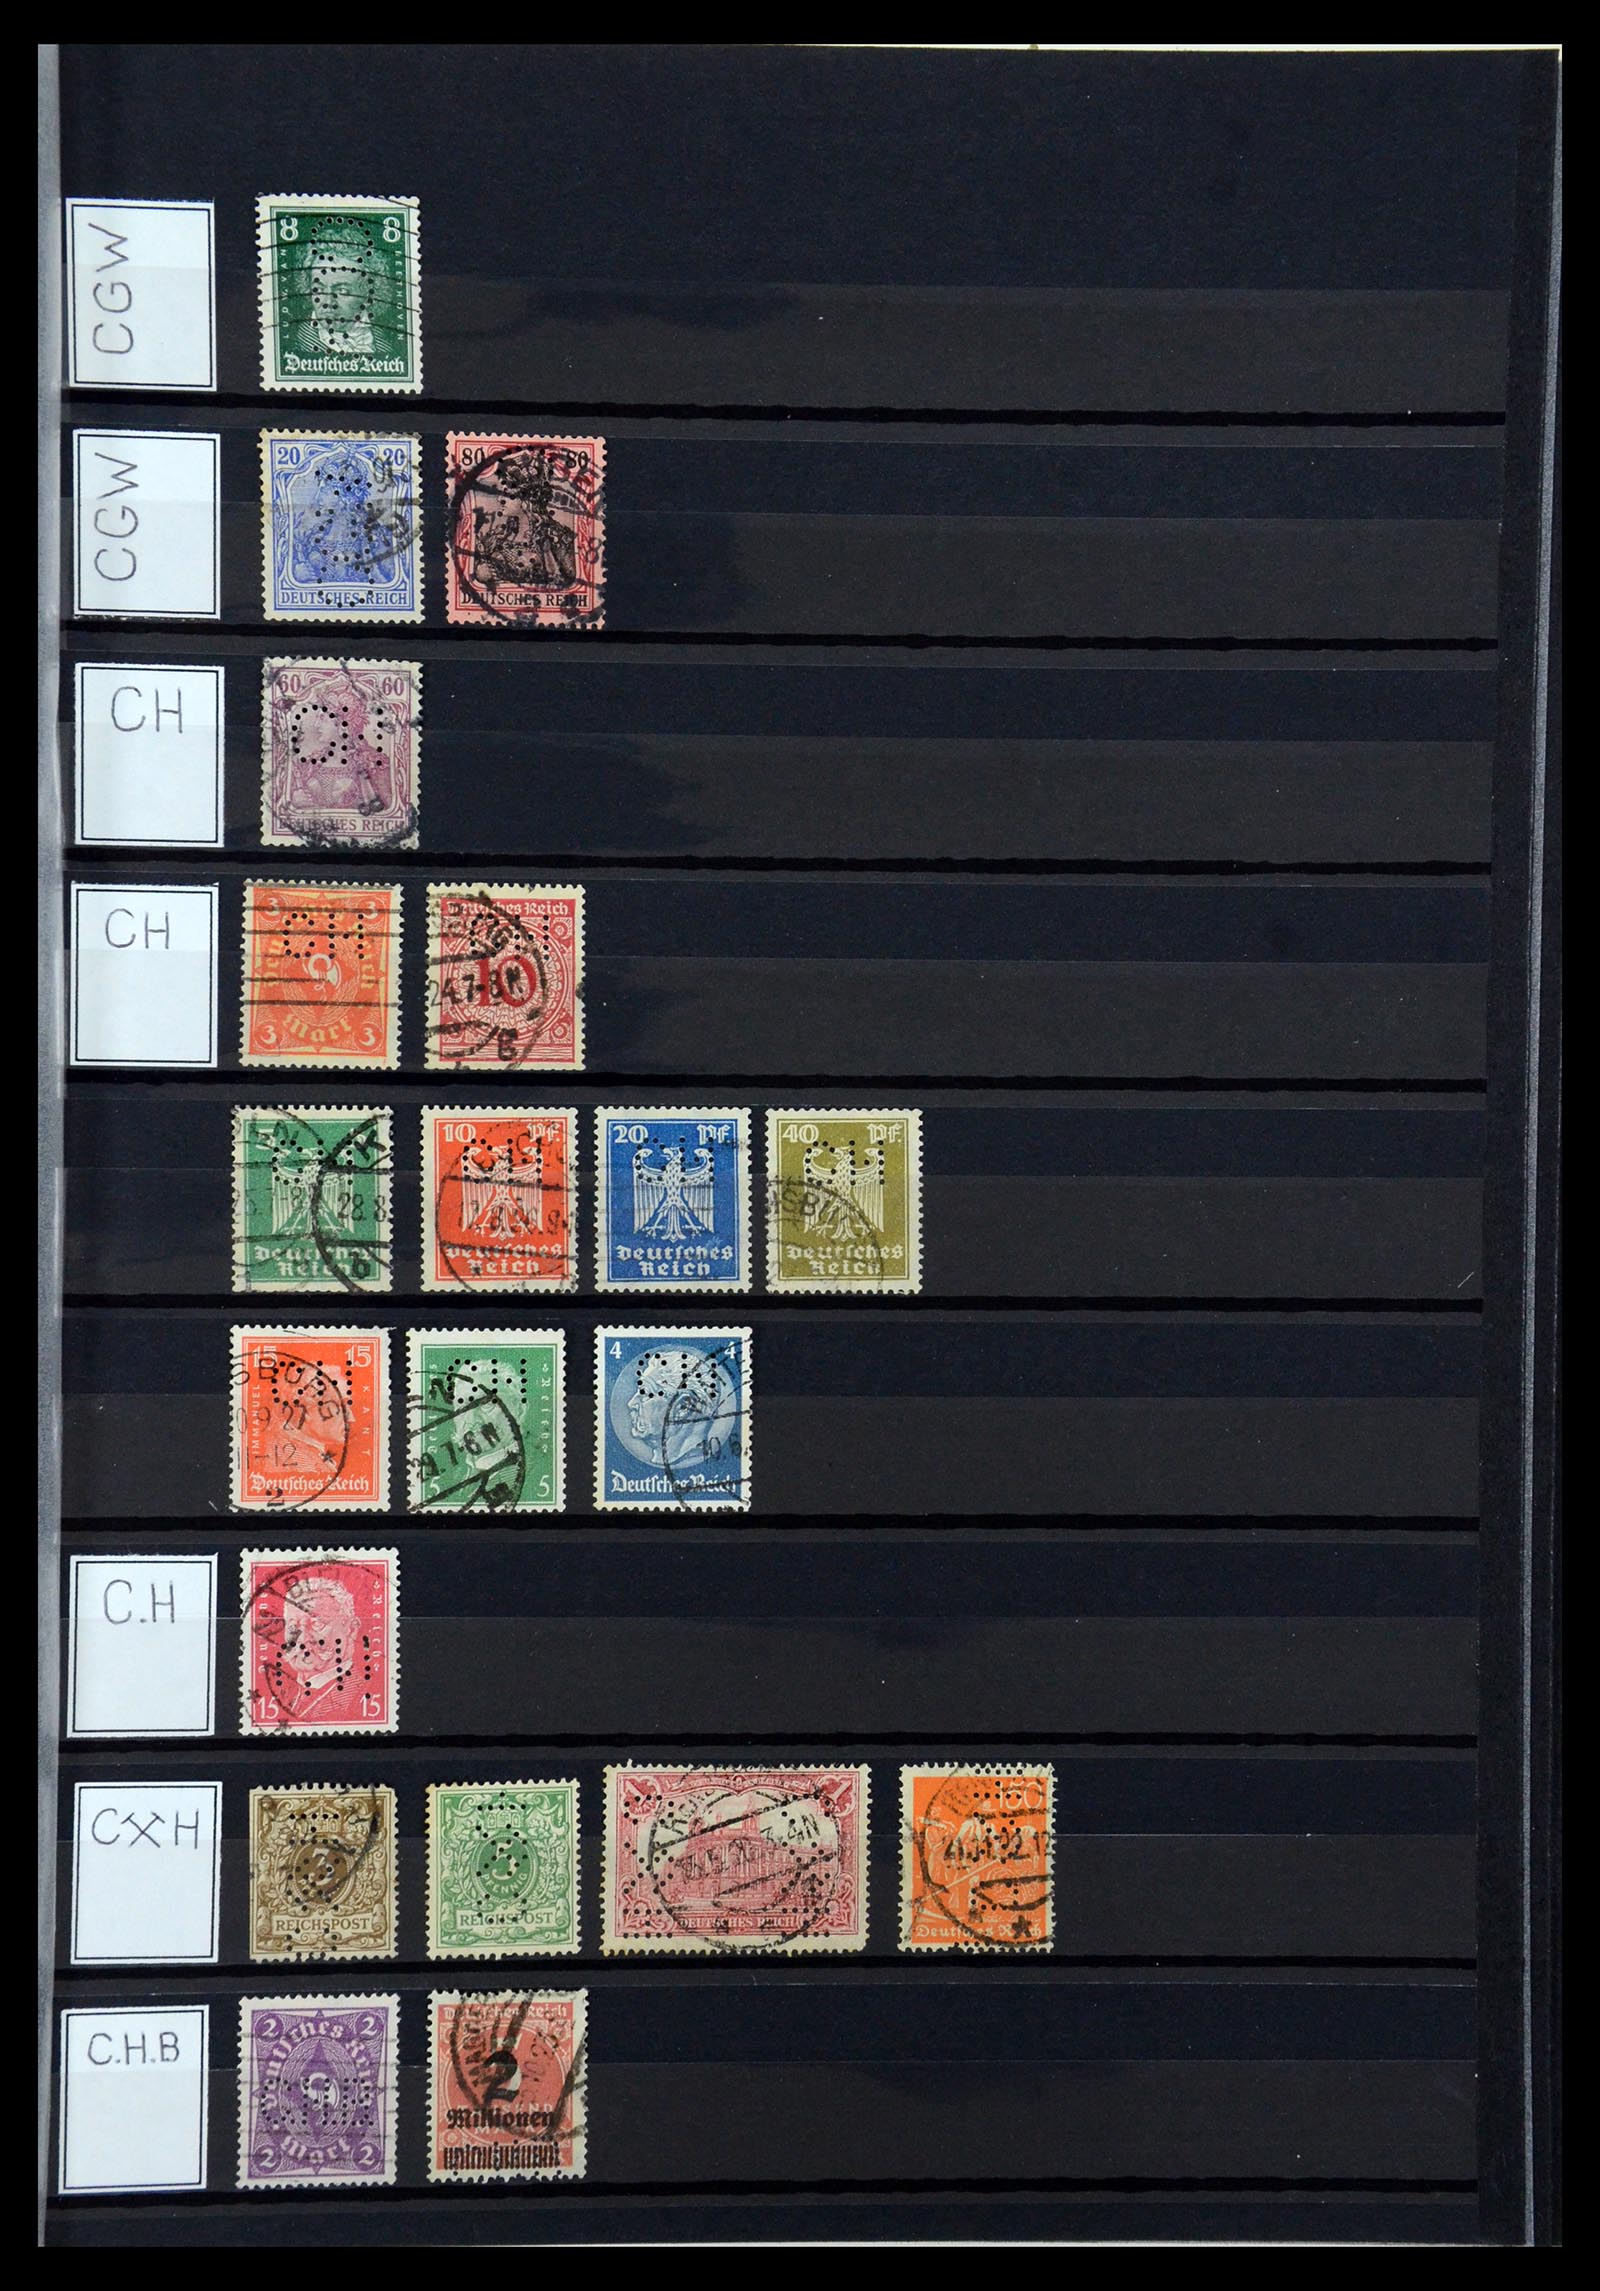 36405 071 - Stamp collection 36405 German Reich perfins 1880-1945.